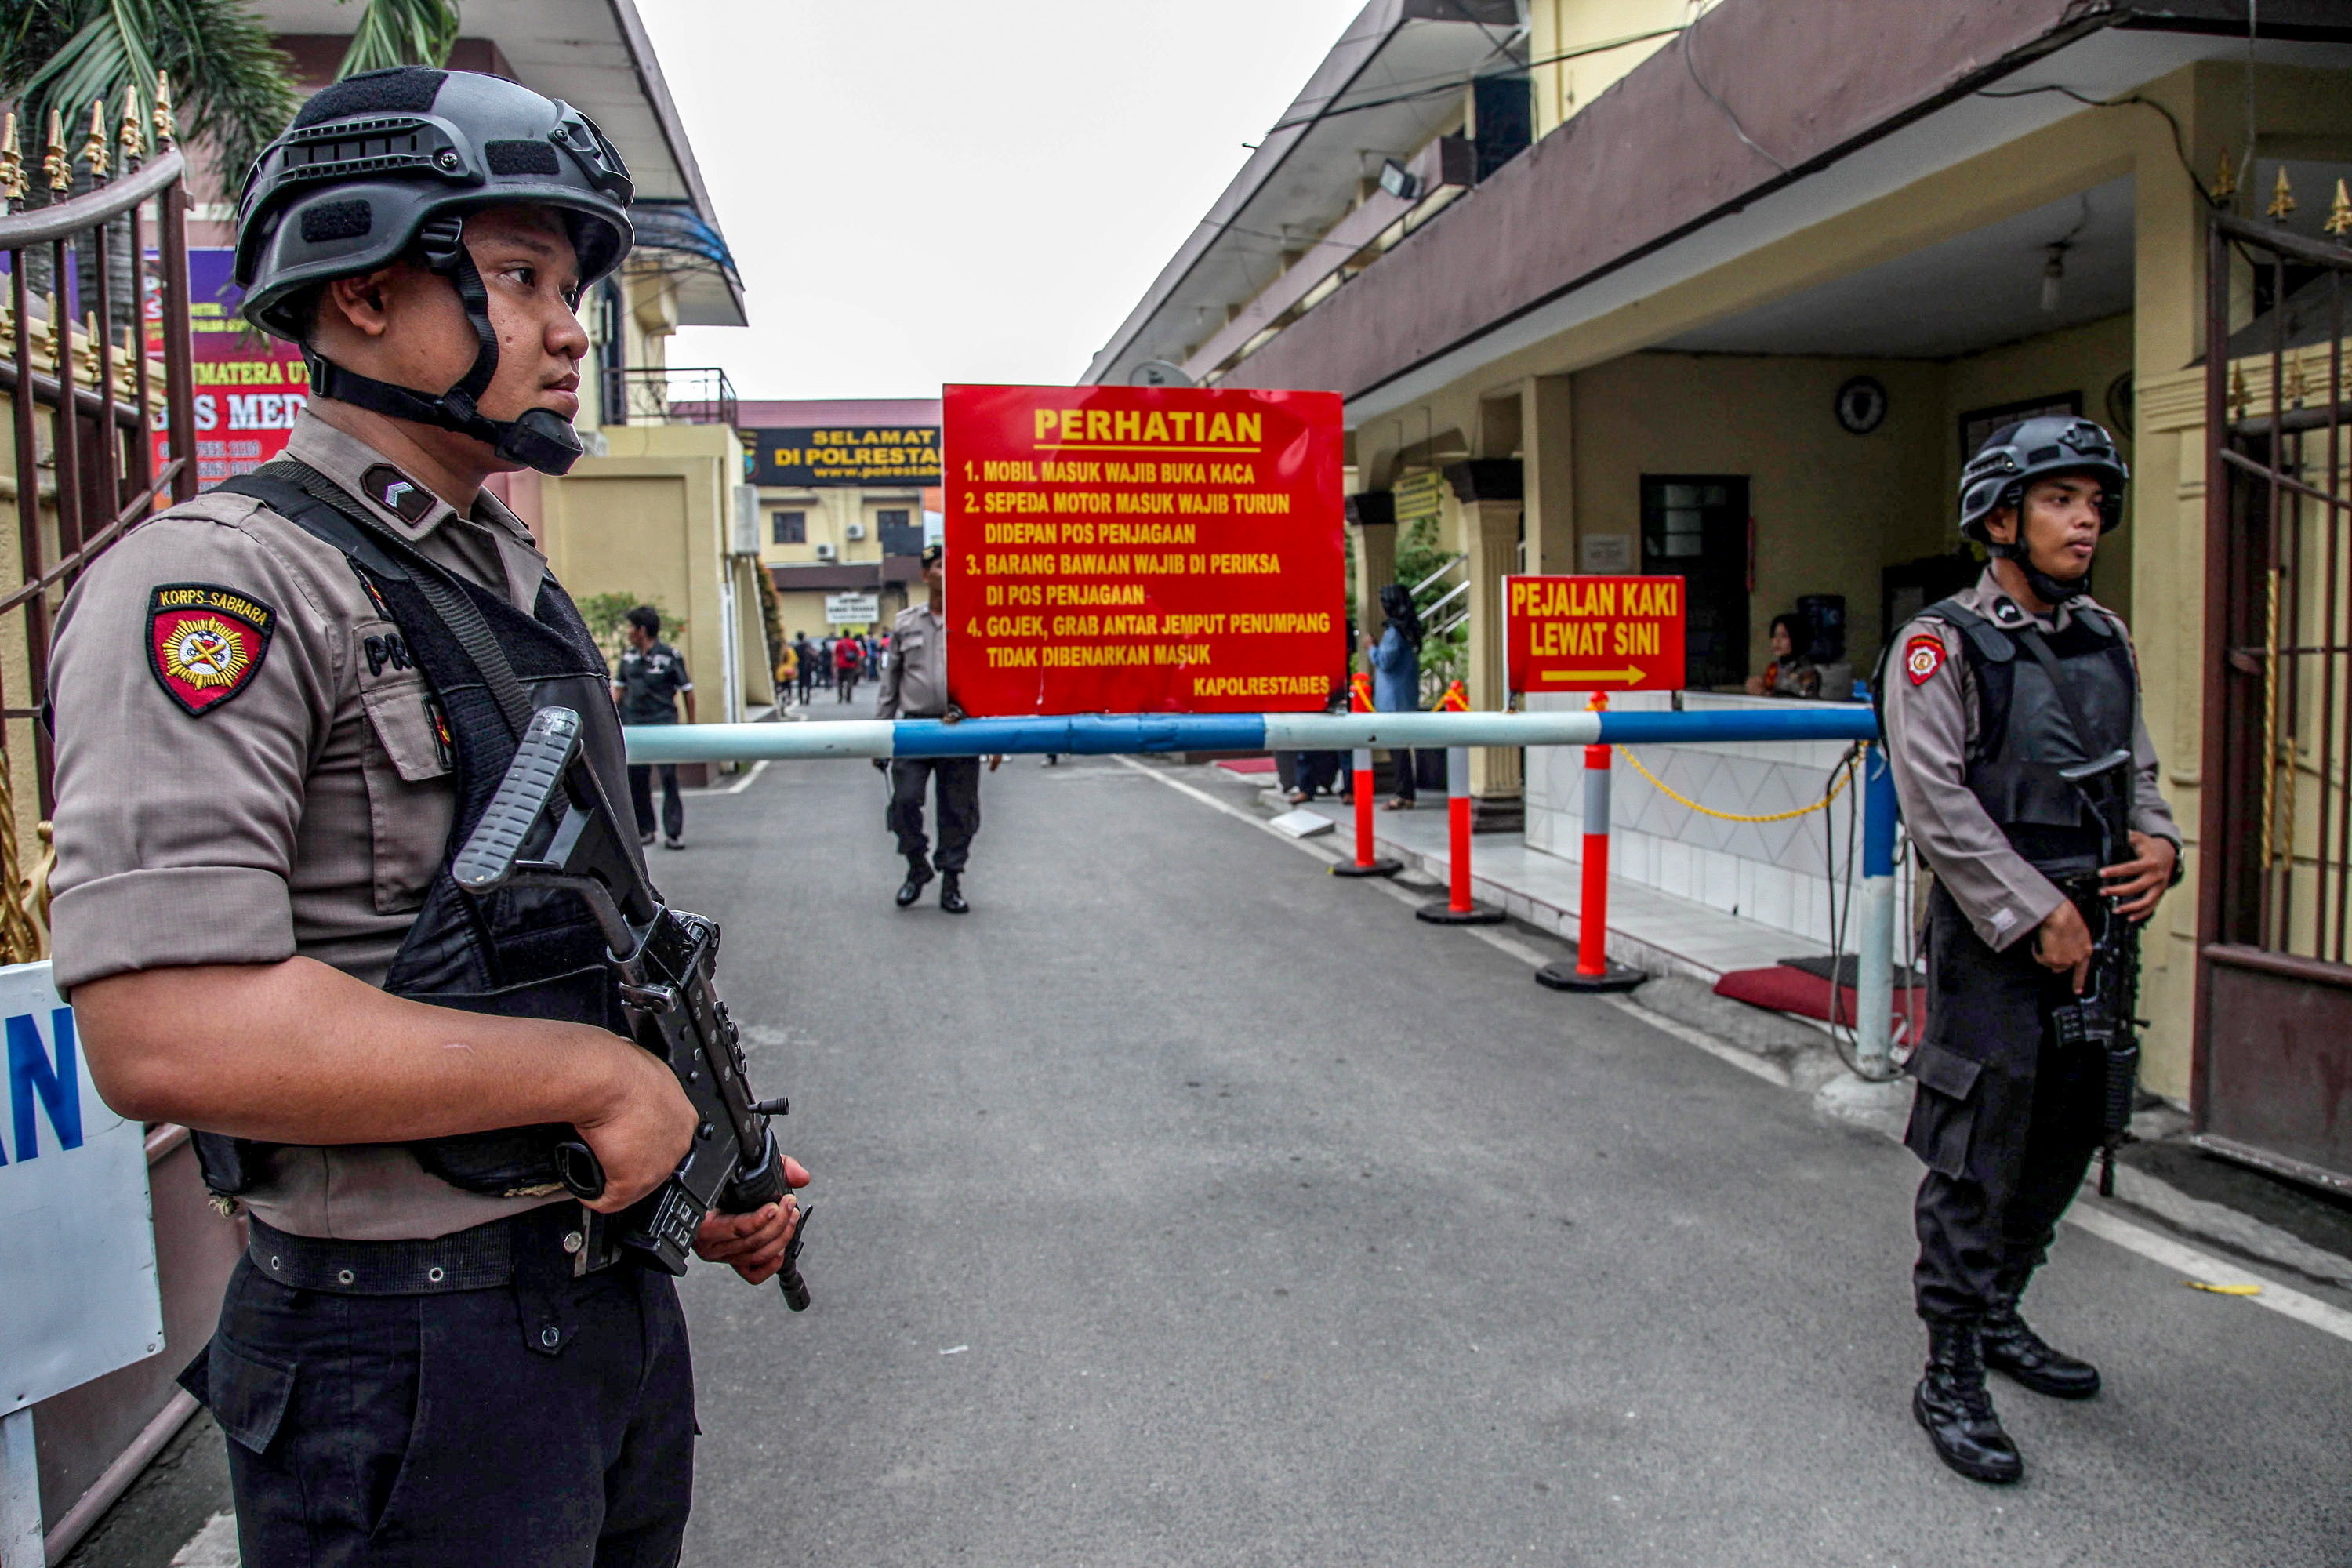 صور حملة أمنية مكثفة للشرطة الإندونيسية لضبط إرهابيين (5)